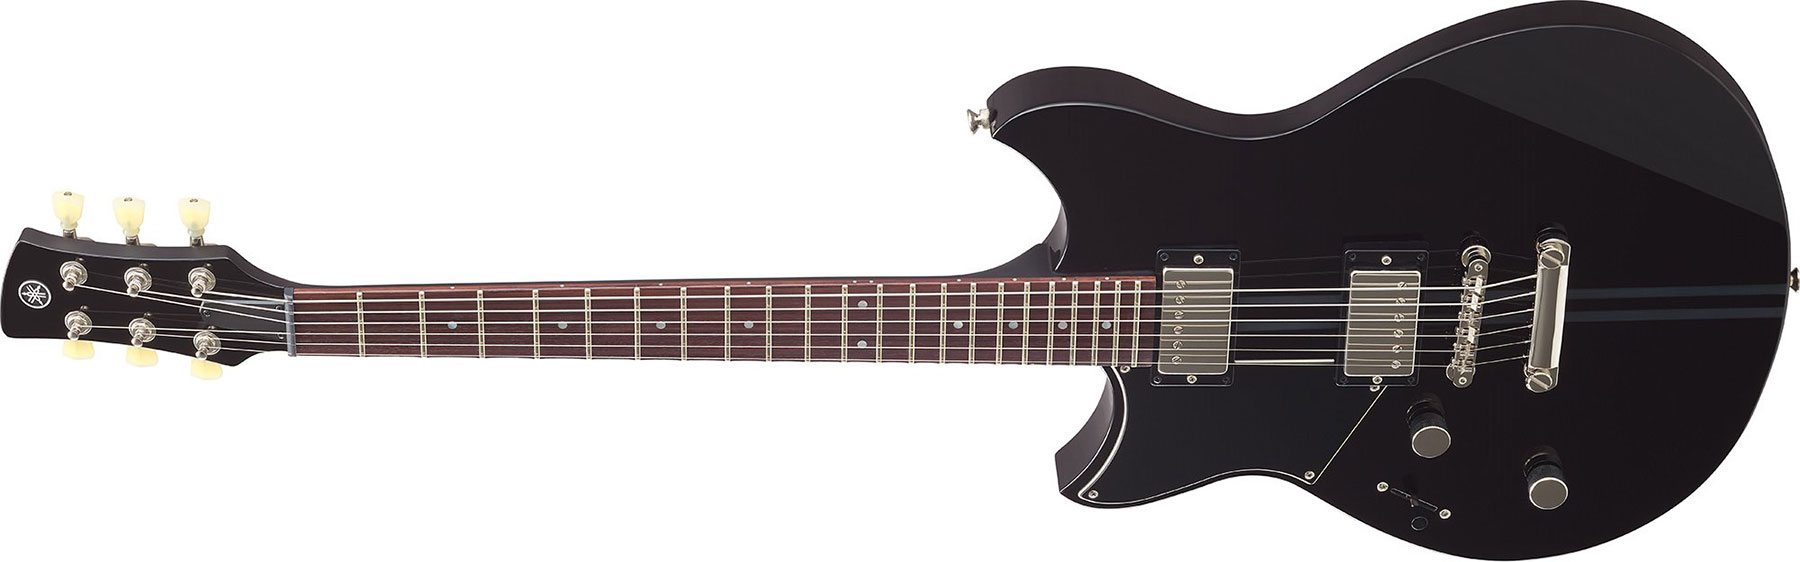 Yamaha Rse20l Revstar Element Lh Gaucher Hh Ht Rw - Black - E-Gitarre für Linkshänder - Variation 1